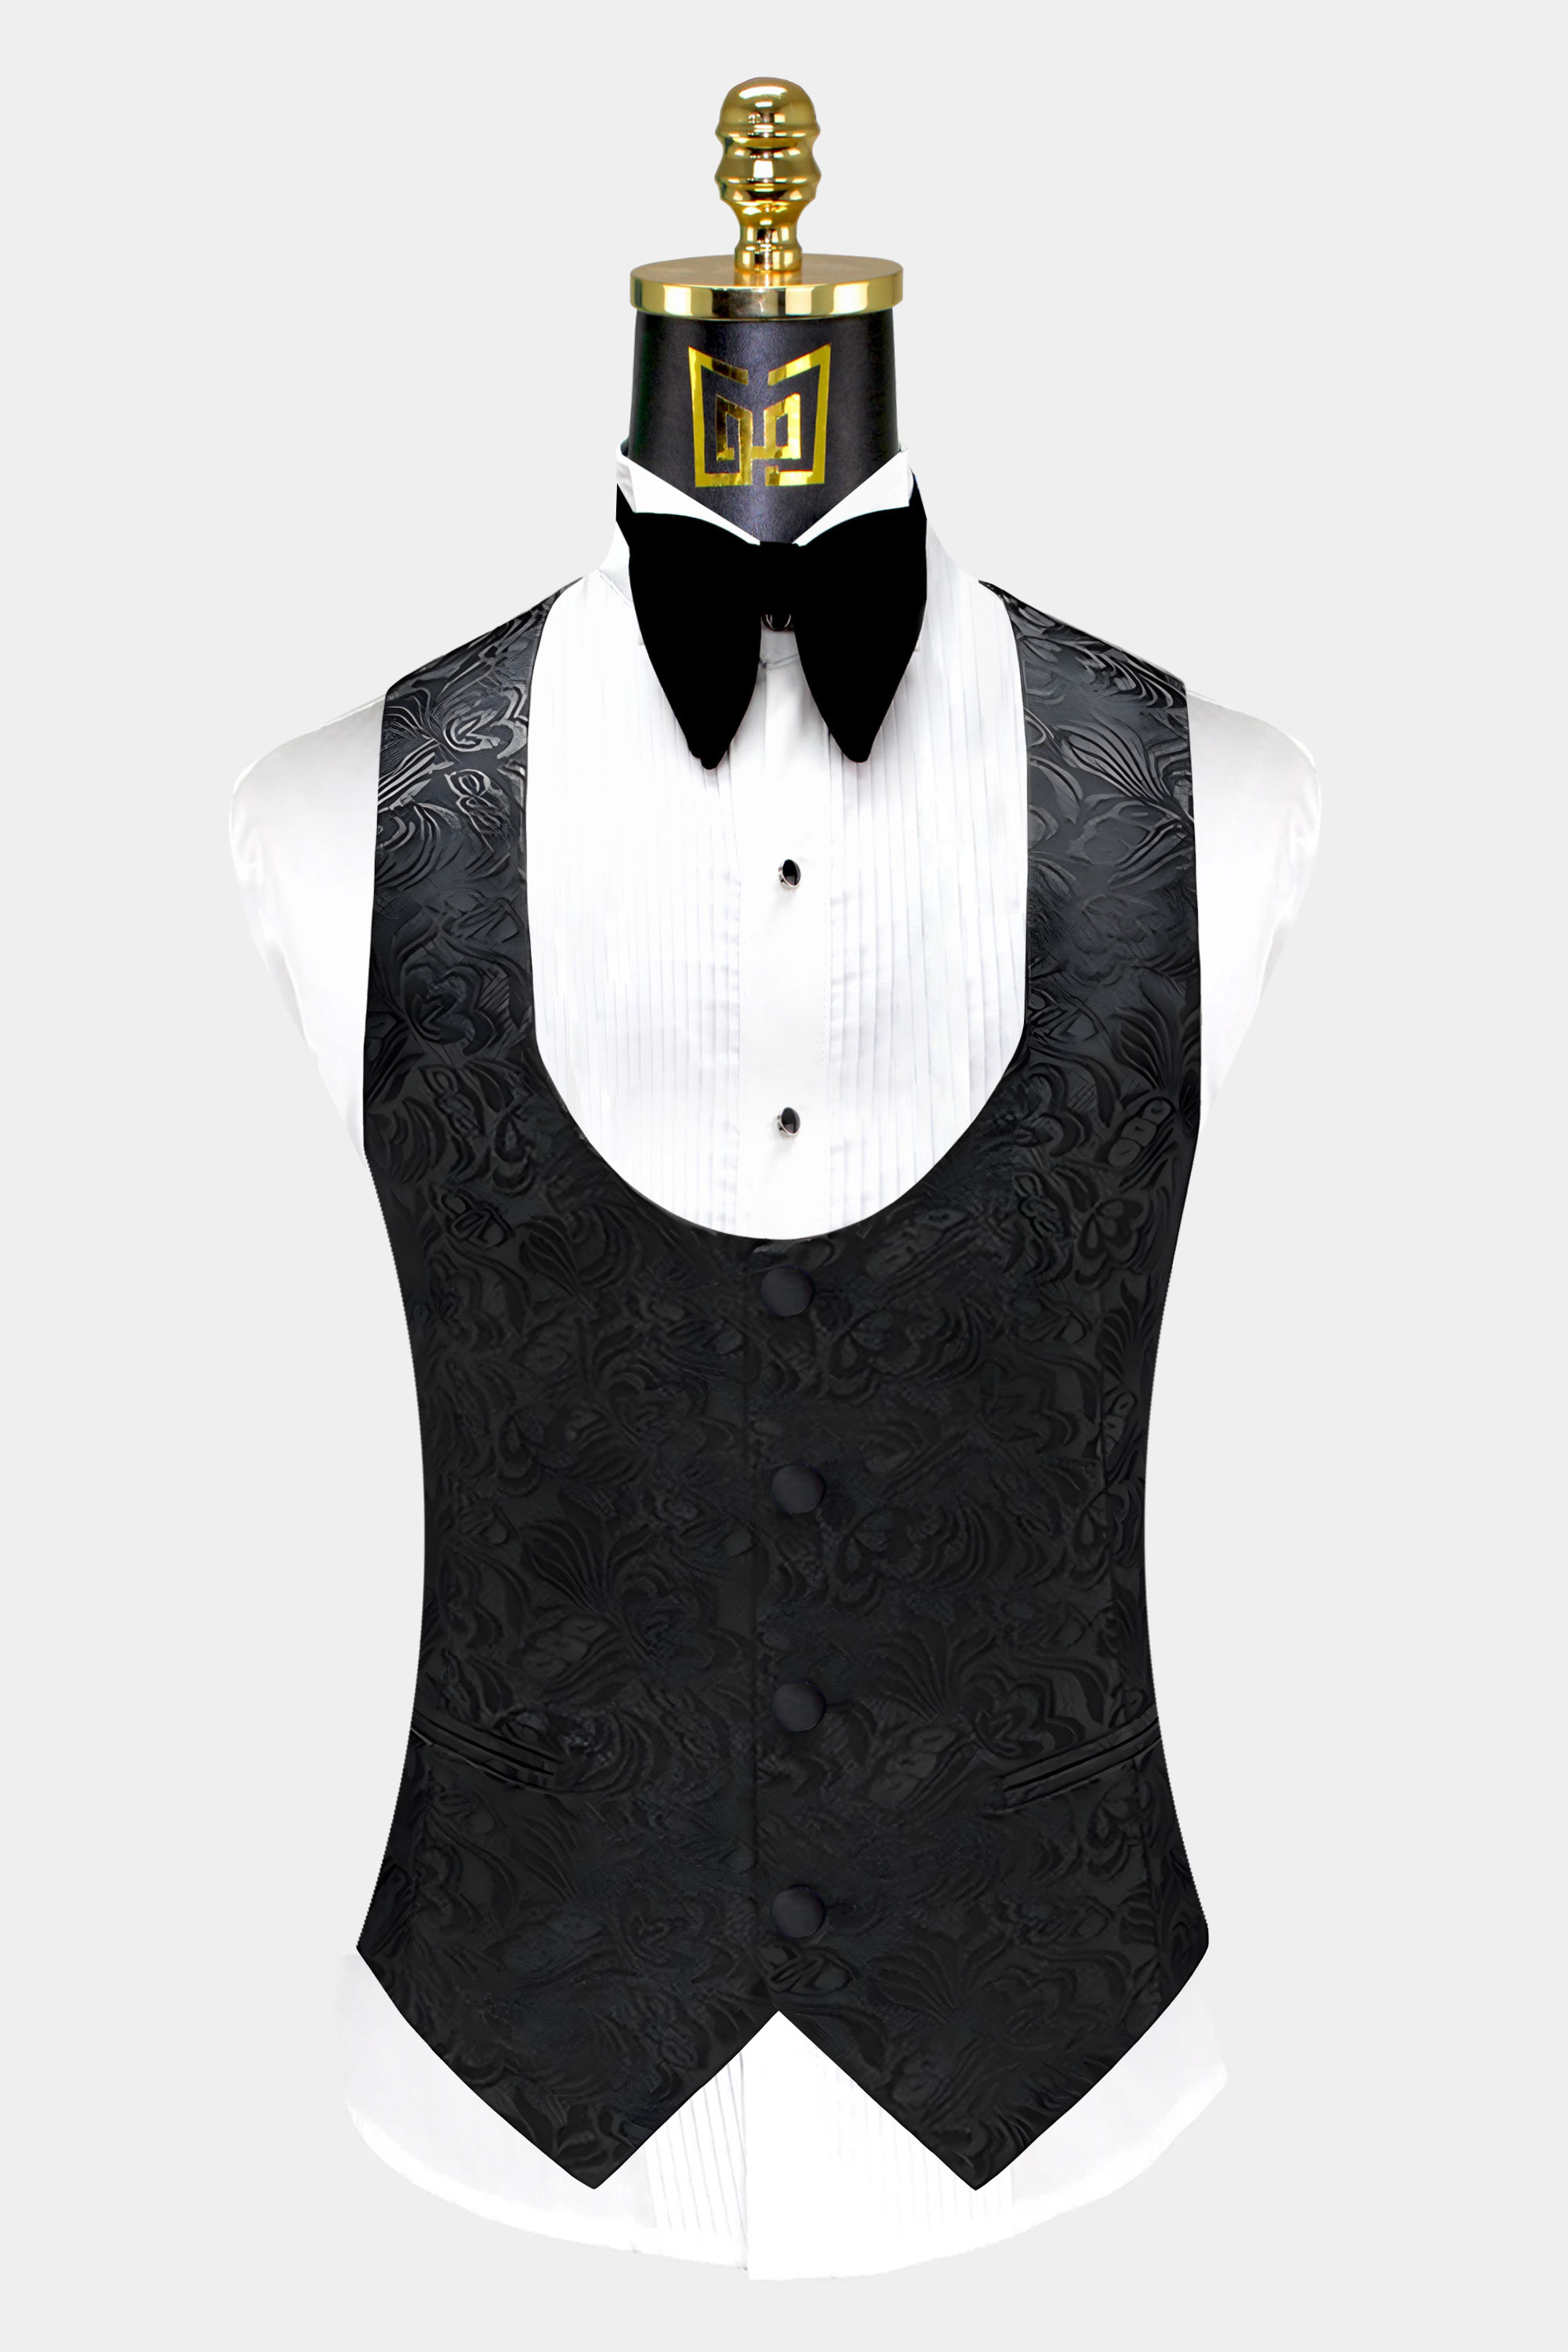 All-Black-Tuxedo-Vest-from-Gentlemansguru.com